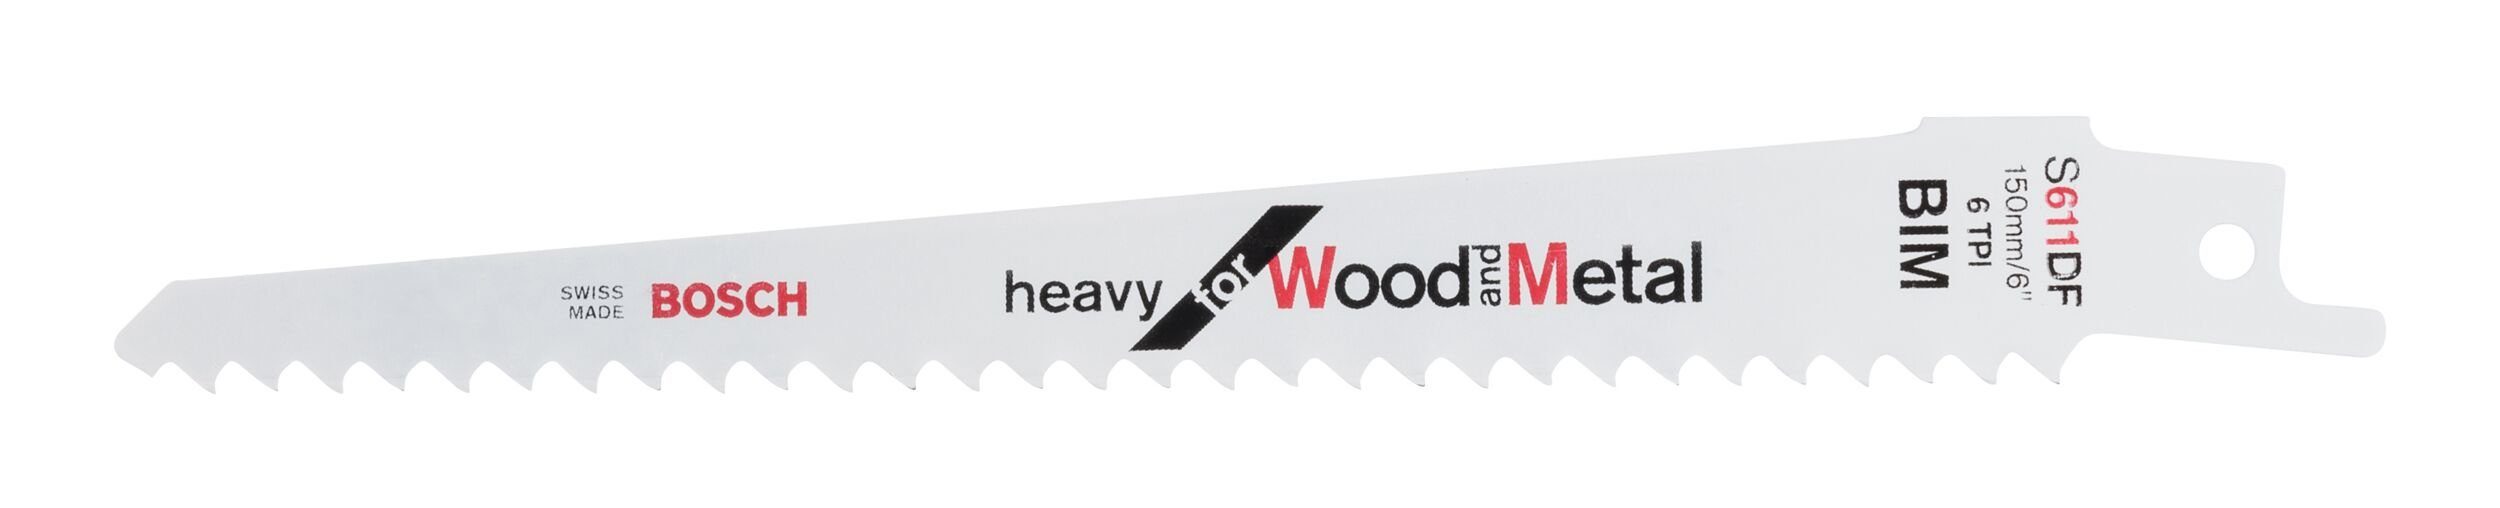 2er-Pack Wood (2 Säbelsägeblatt Heavy DF S - 611 BOSCH Stück), Metal for and